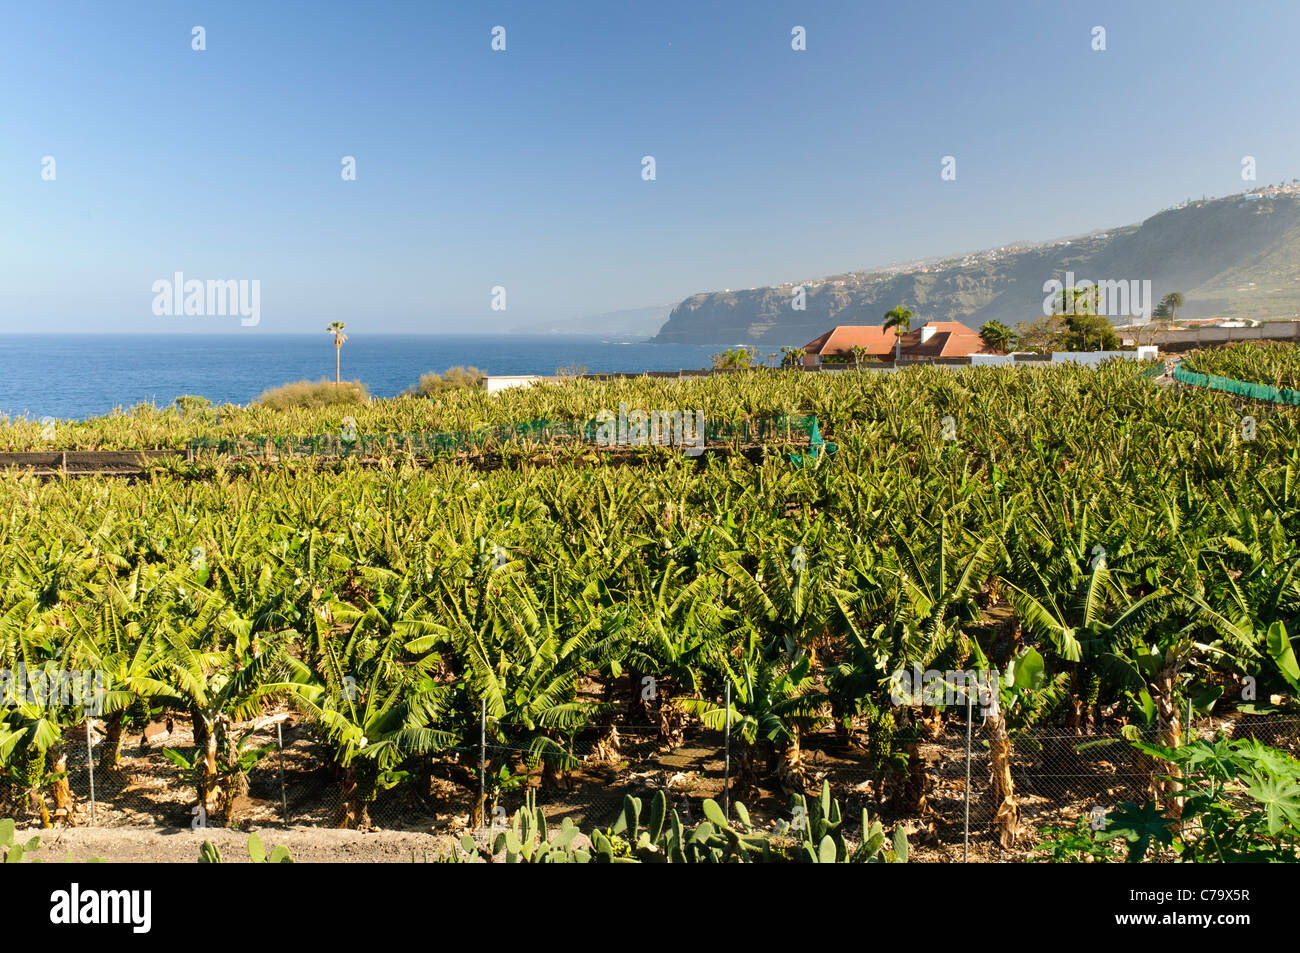 Plantation de banane sur la côte, à Puerto de la Cruz, Tenerife, Canaries, Espagne, Europe Banque D'Images